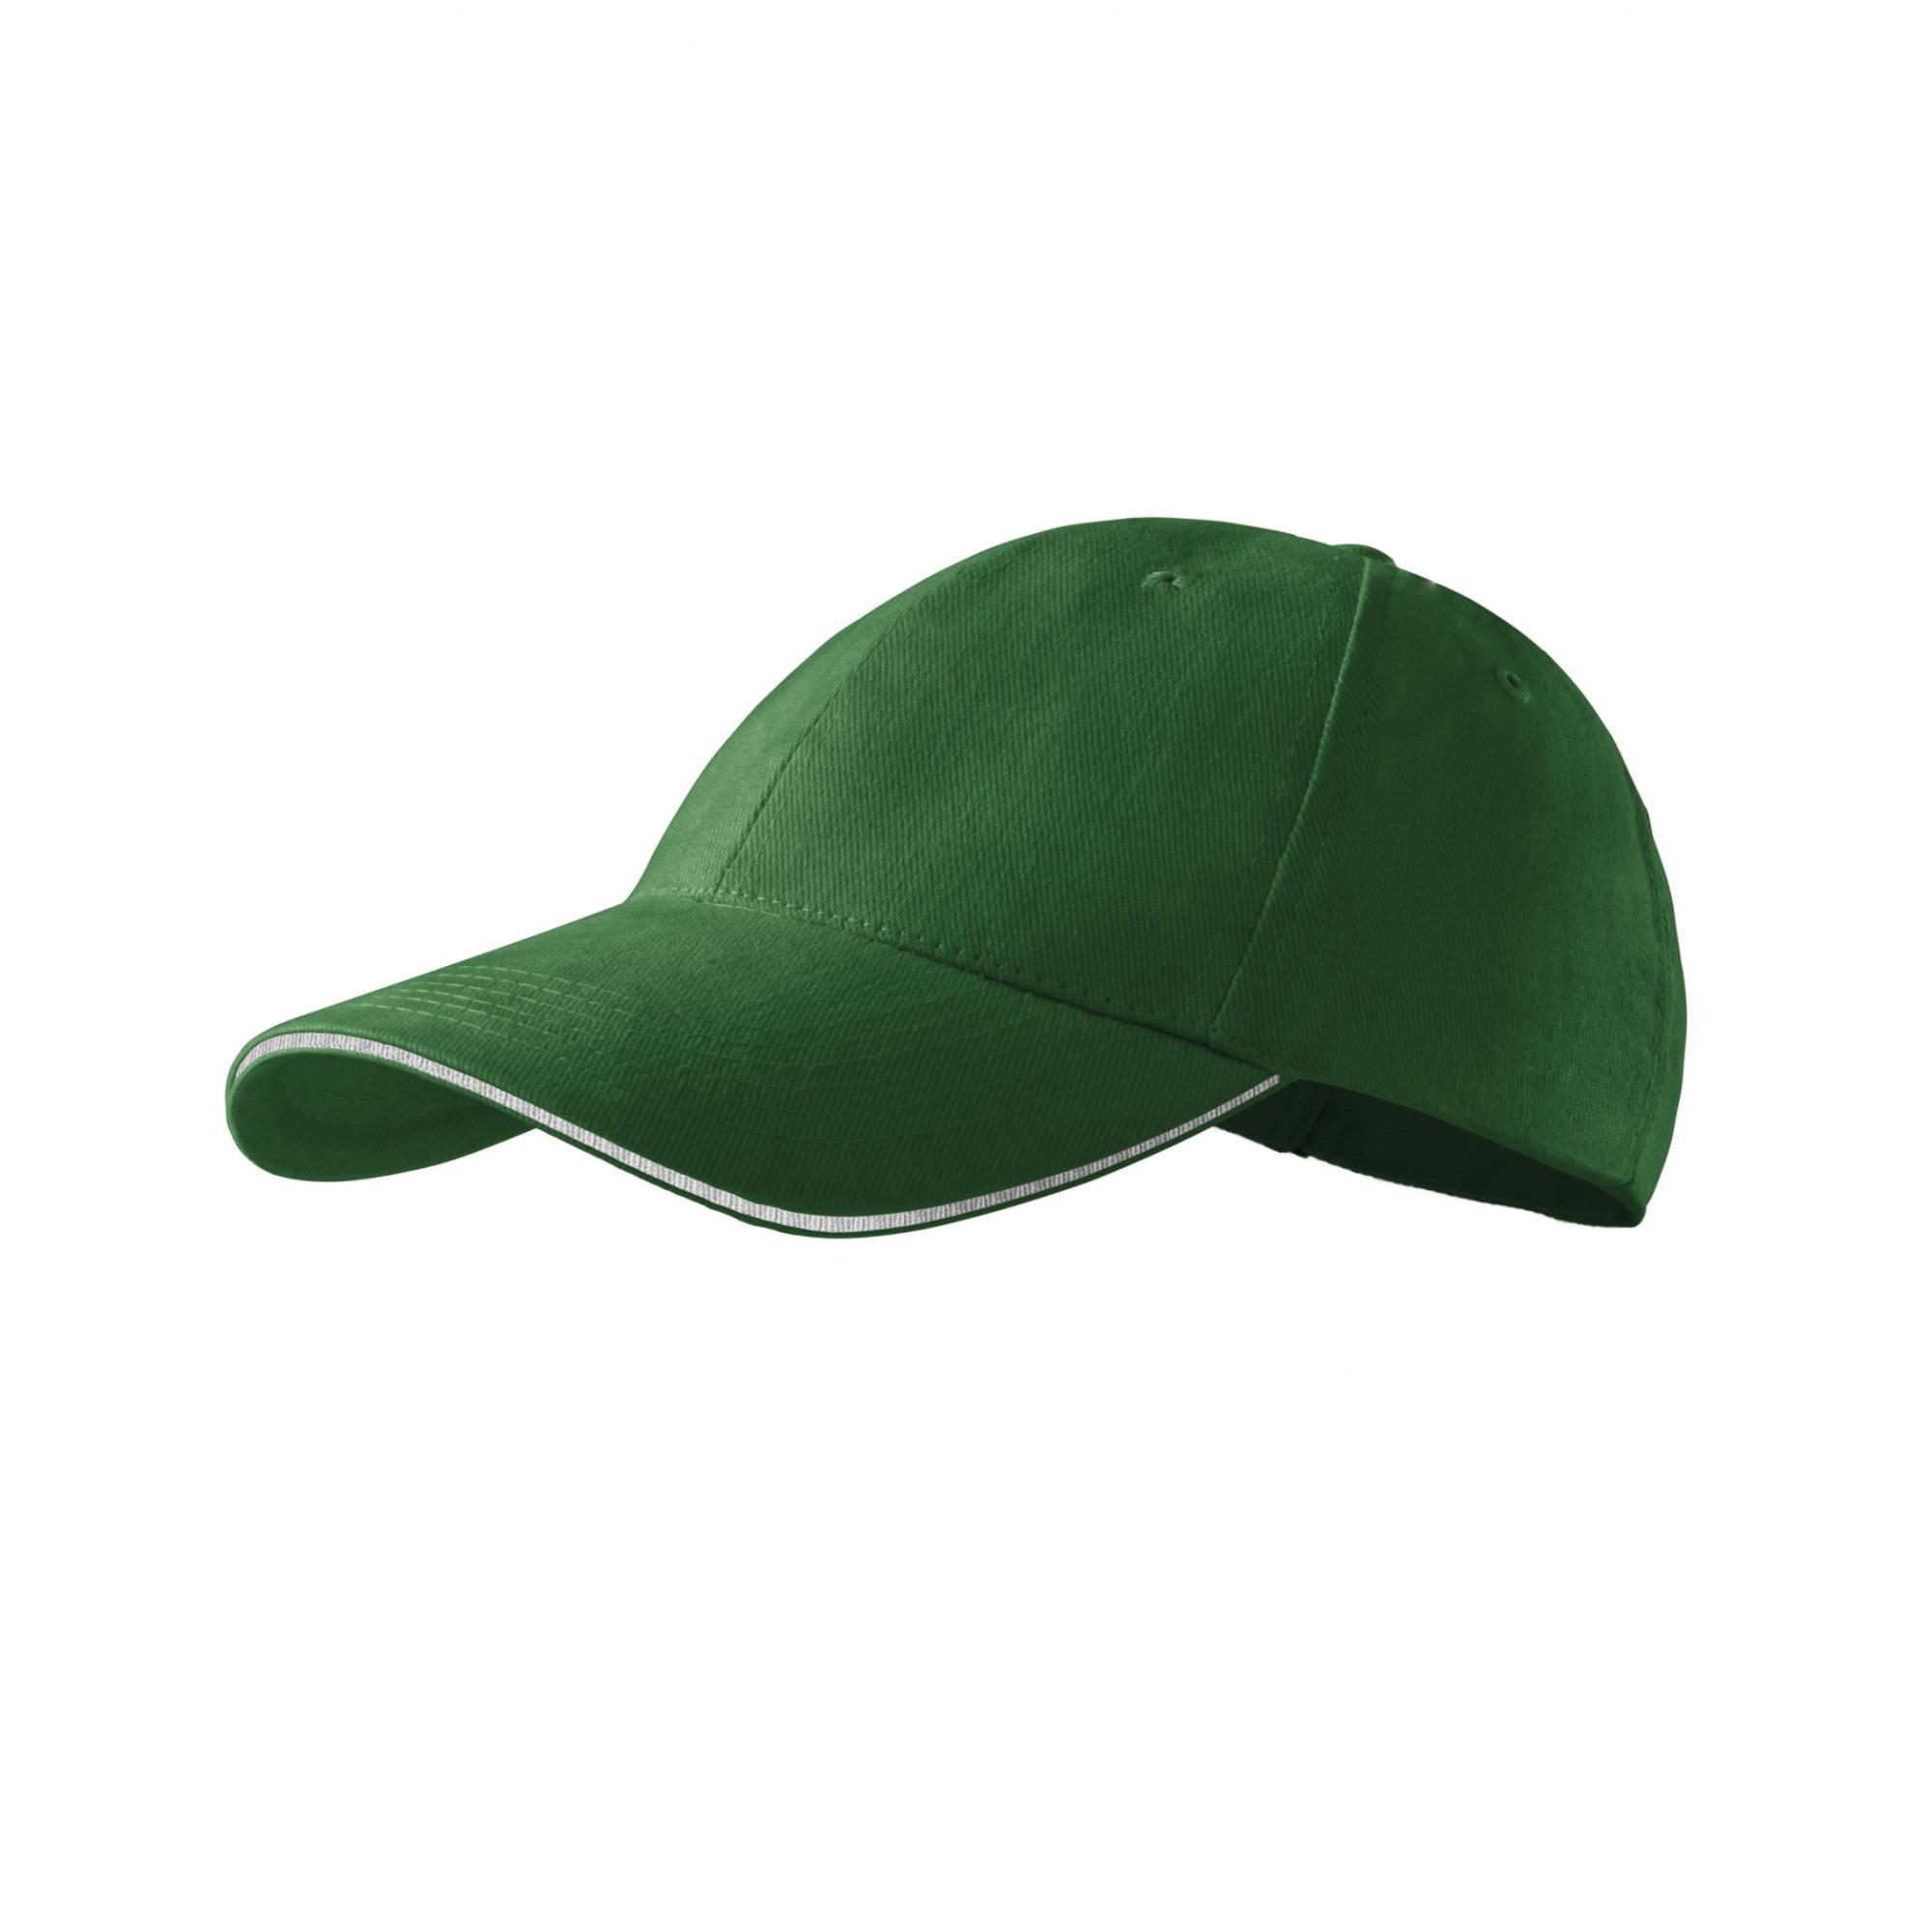 Şapcă unisex Sandwich 6P 306 Verde sticla Marime universala